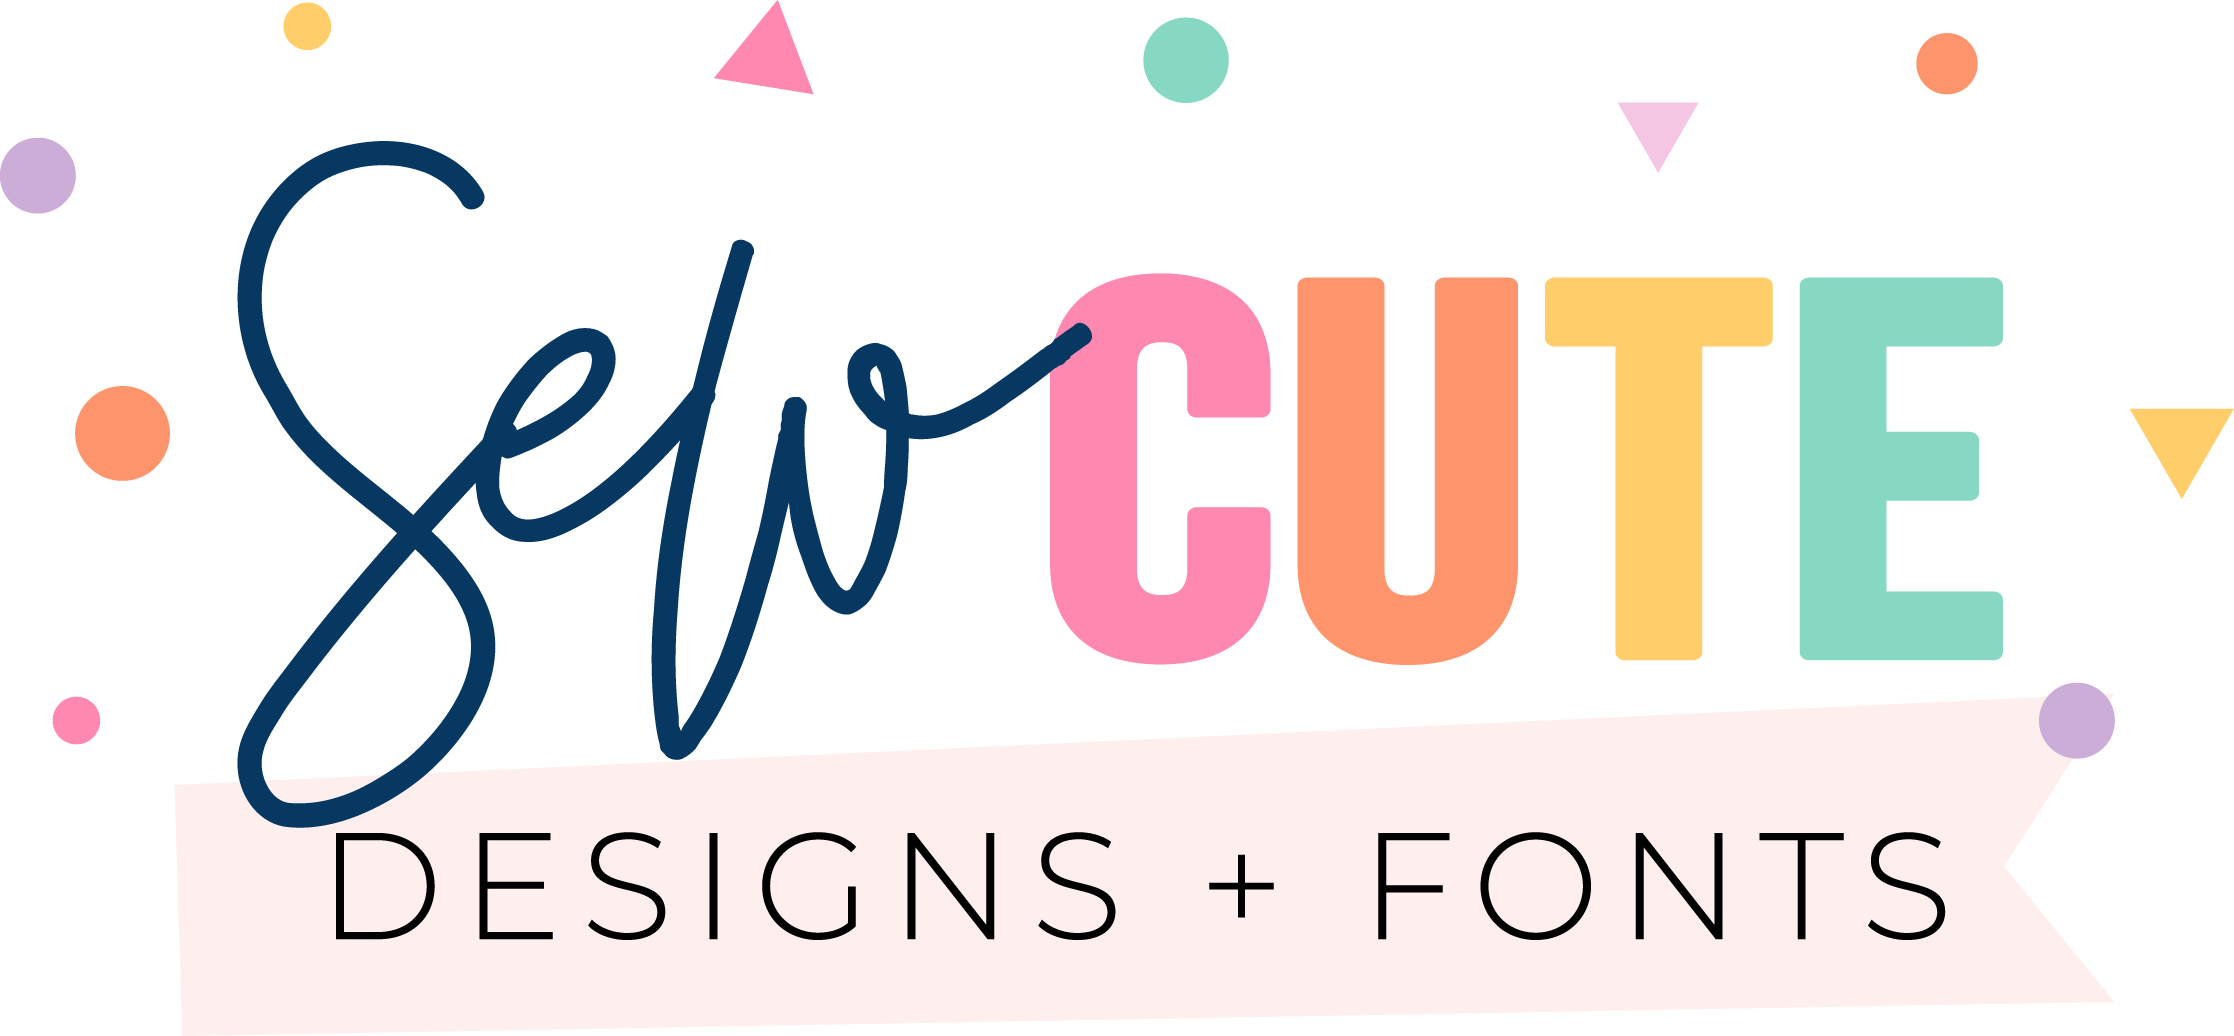 Sew Cute Designs + Fonts | sewcutedesigns.com